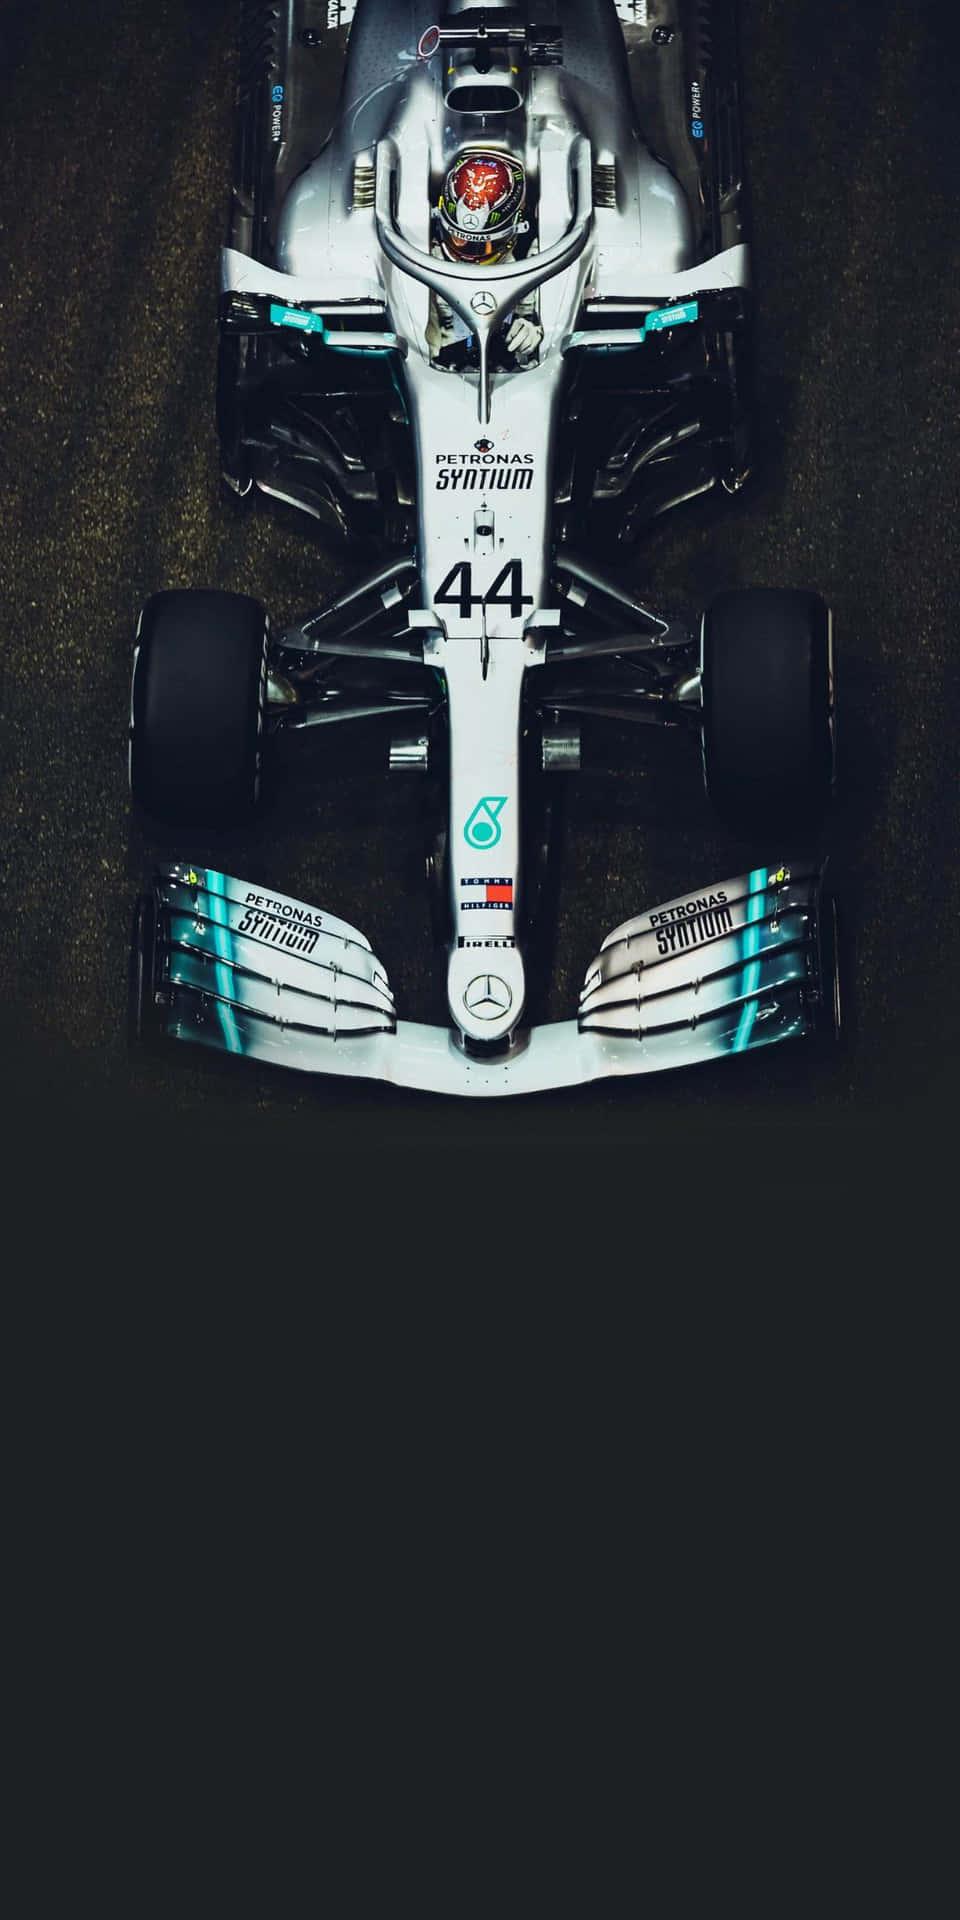 Mercedes F1 Car In The Dark